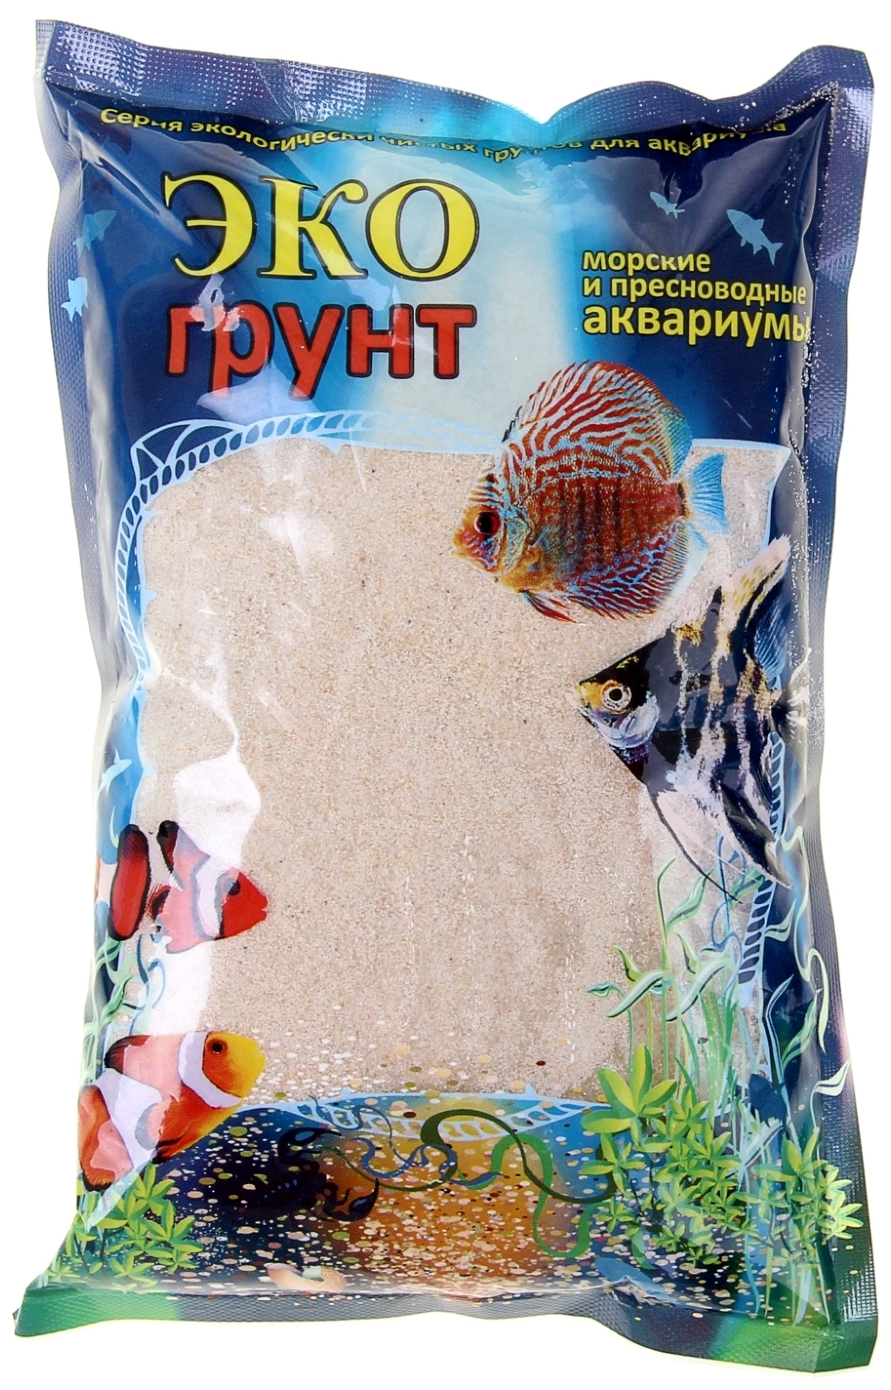 

Грунт для аквариума Песок кварцевый белый, 0,3-0,9 мм, 1 кг 520010